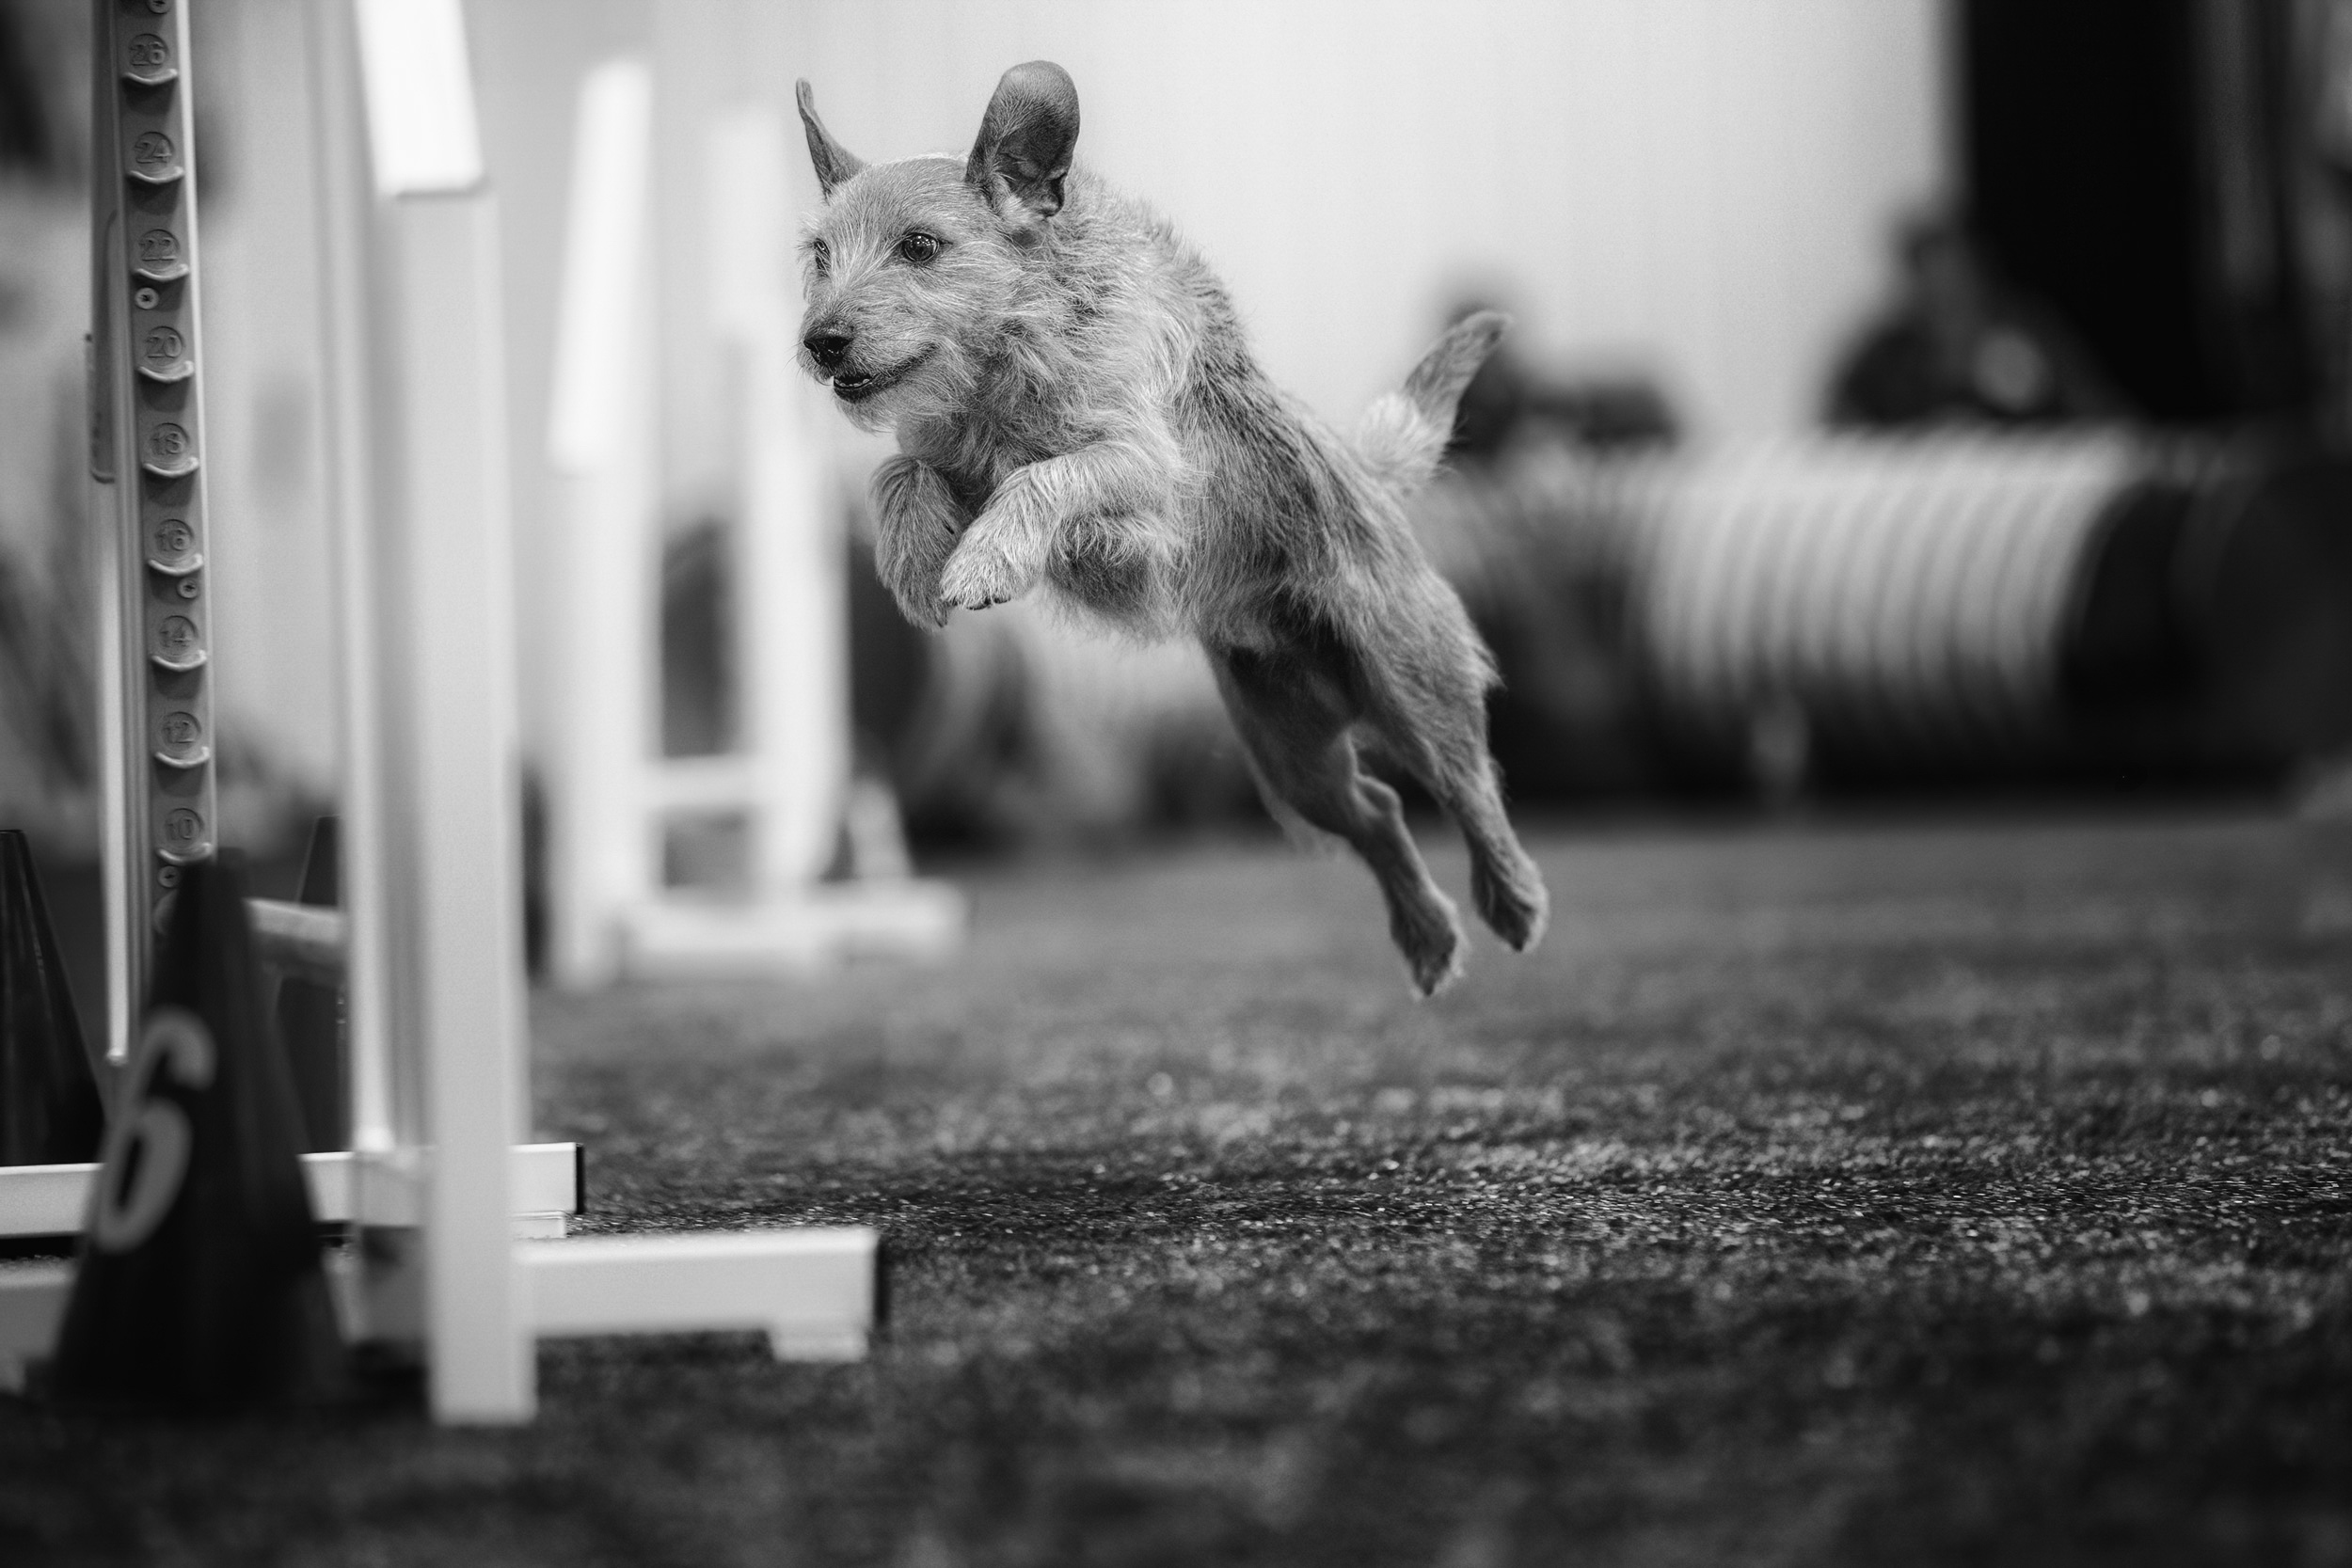 Terrier jumping a jump. 